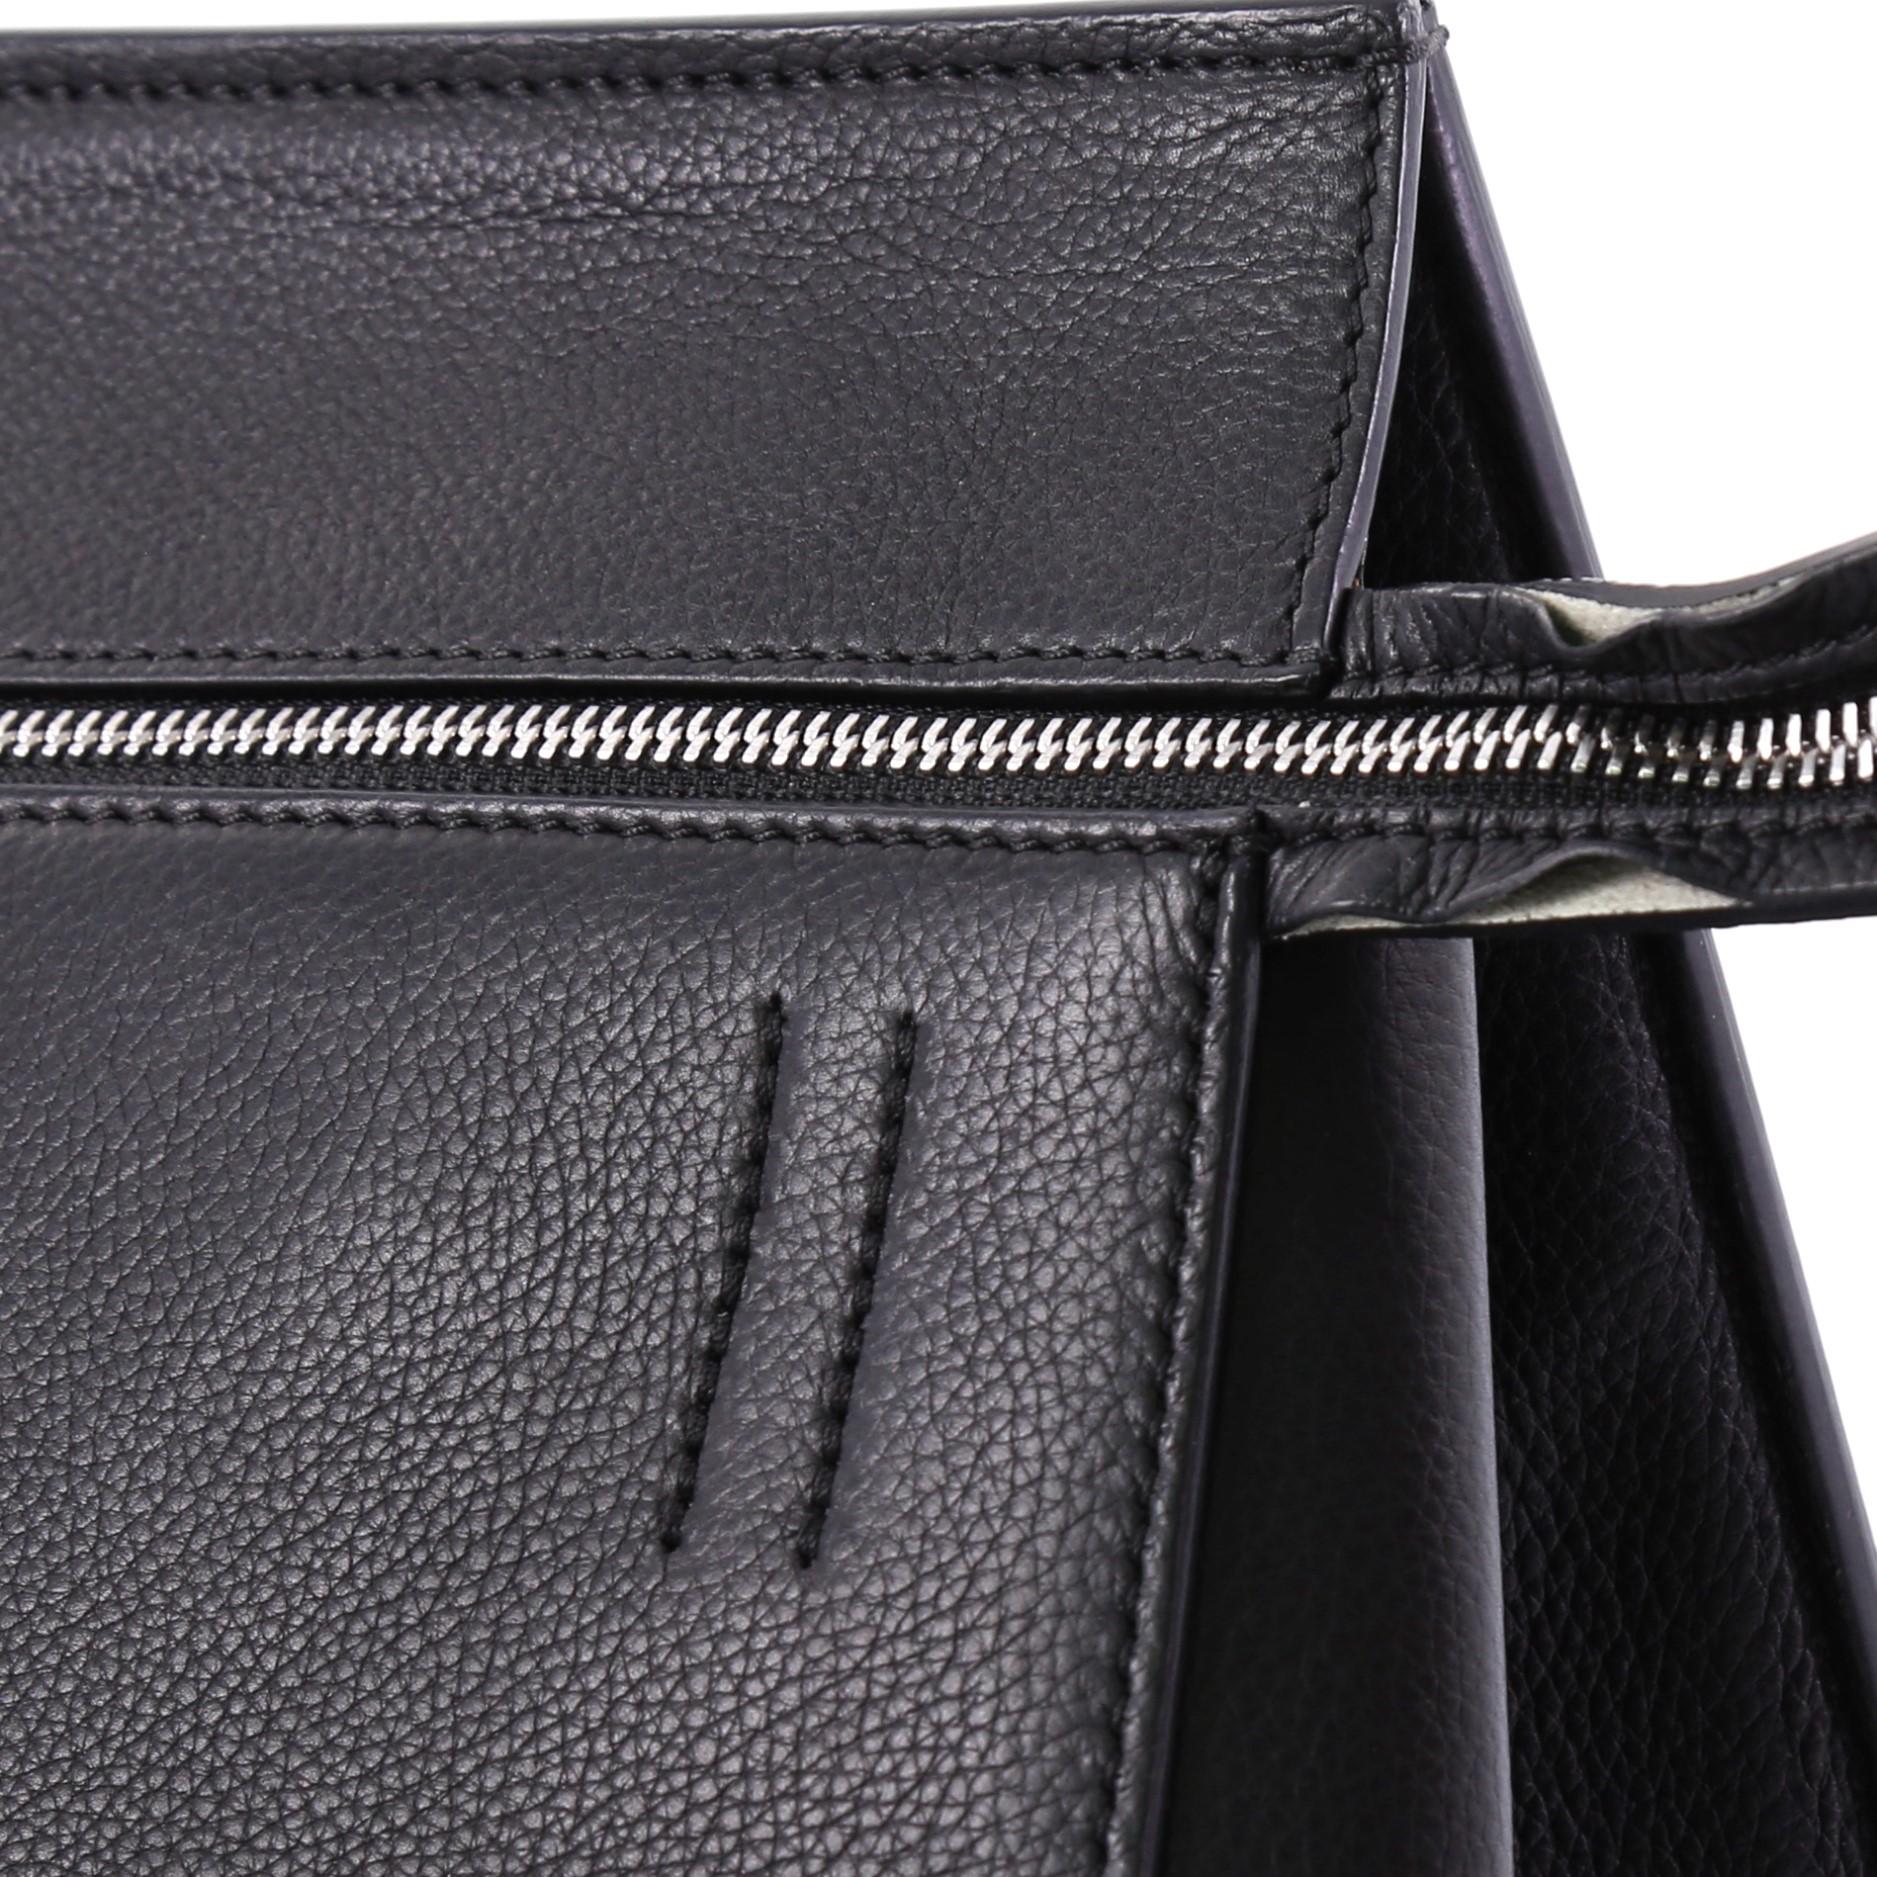  Celine Edge Bag Leather Medium 3